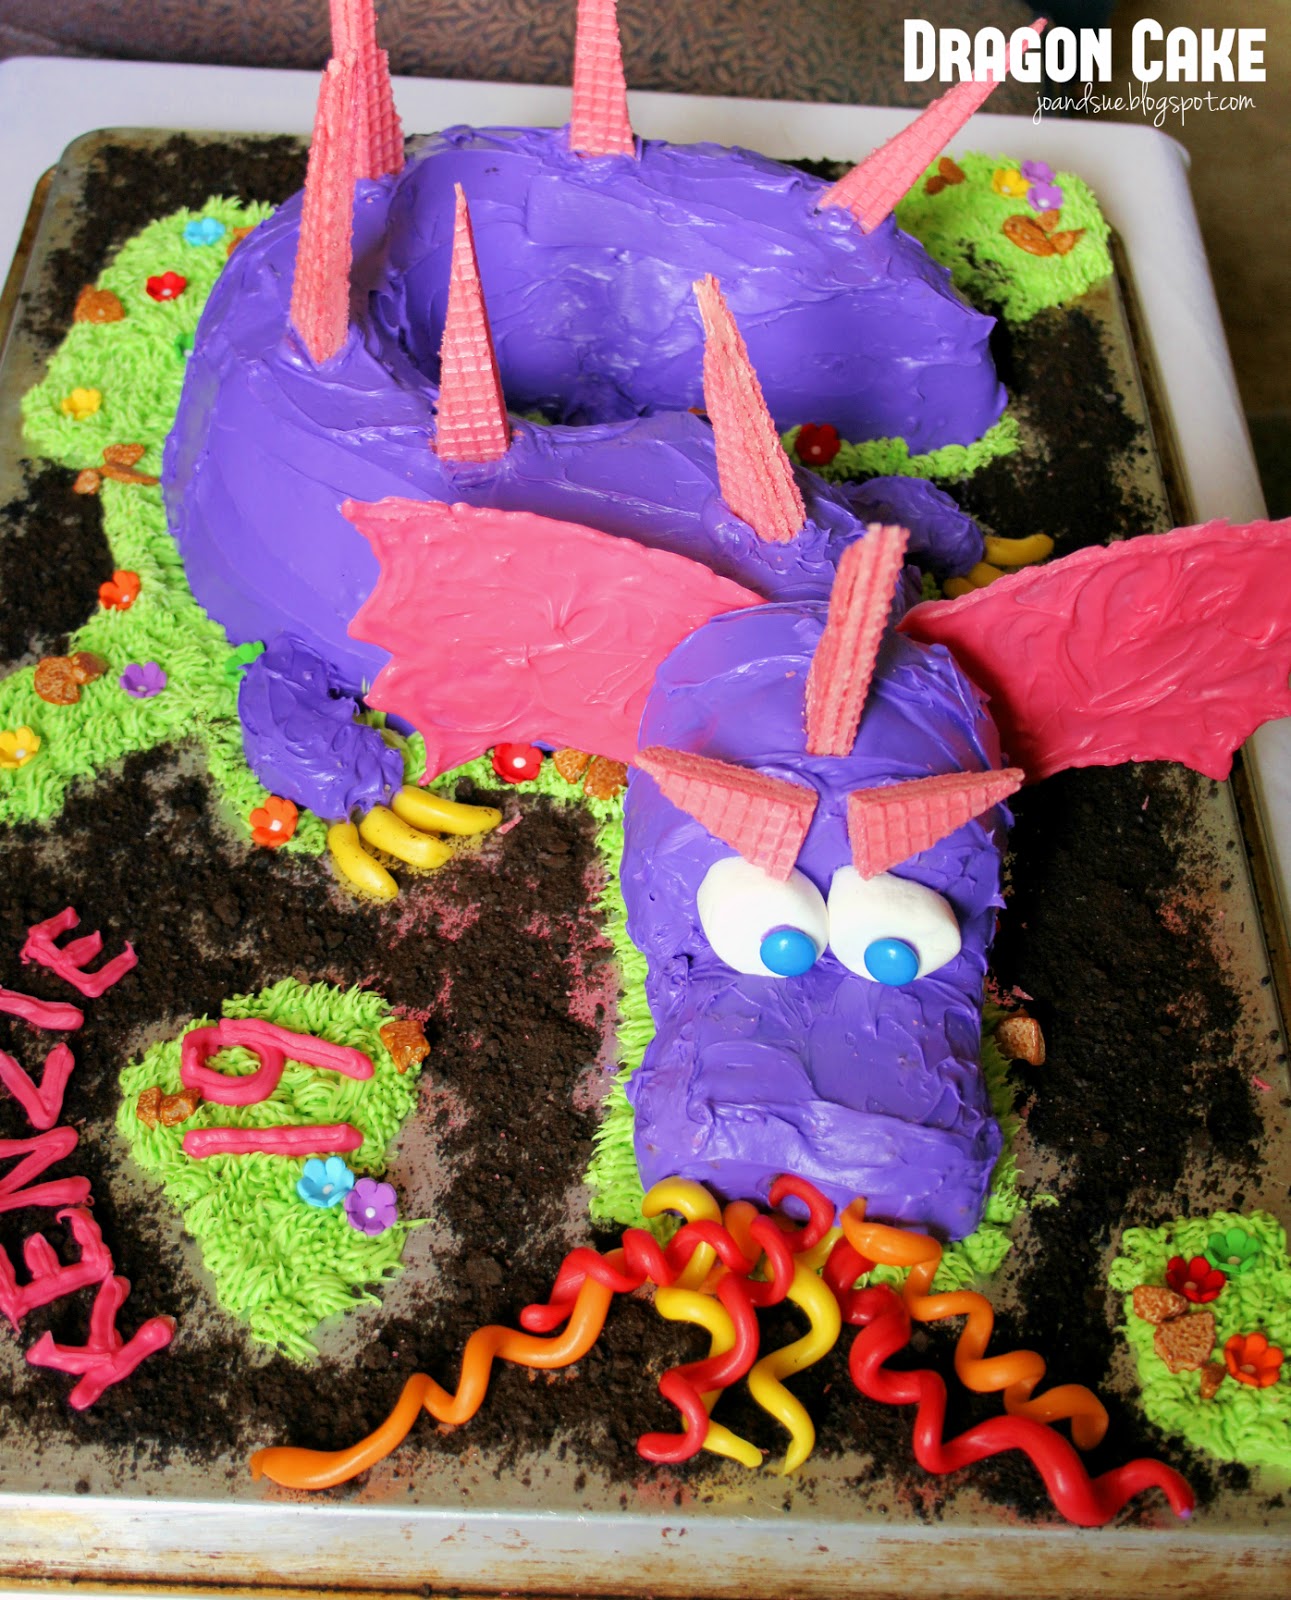 7 Dragon Cake Pan ideas  dragon cake, cake, dragon cakes